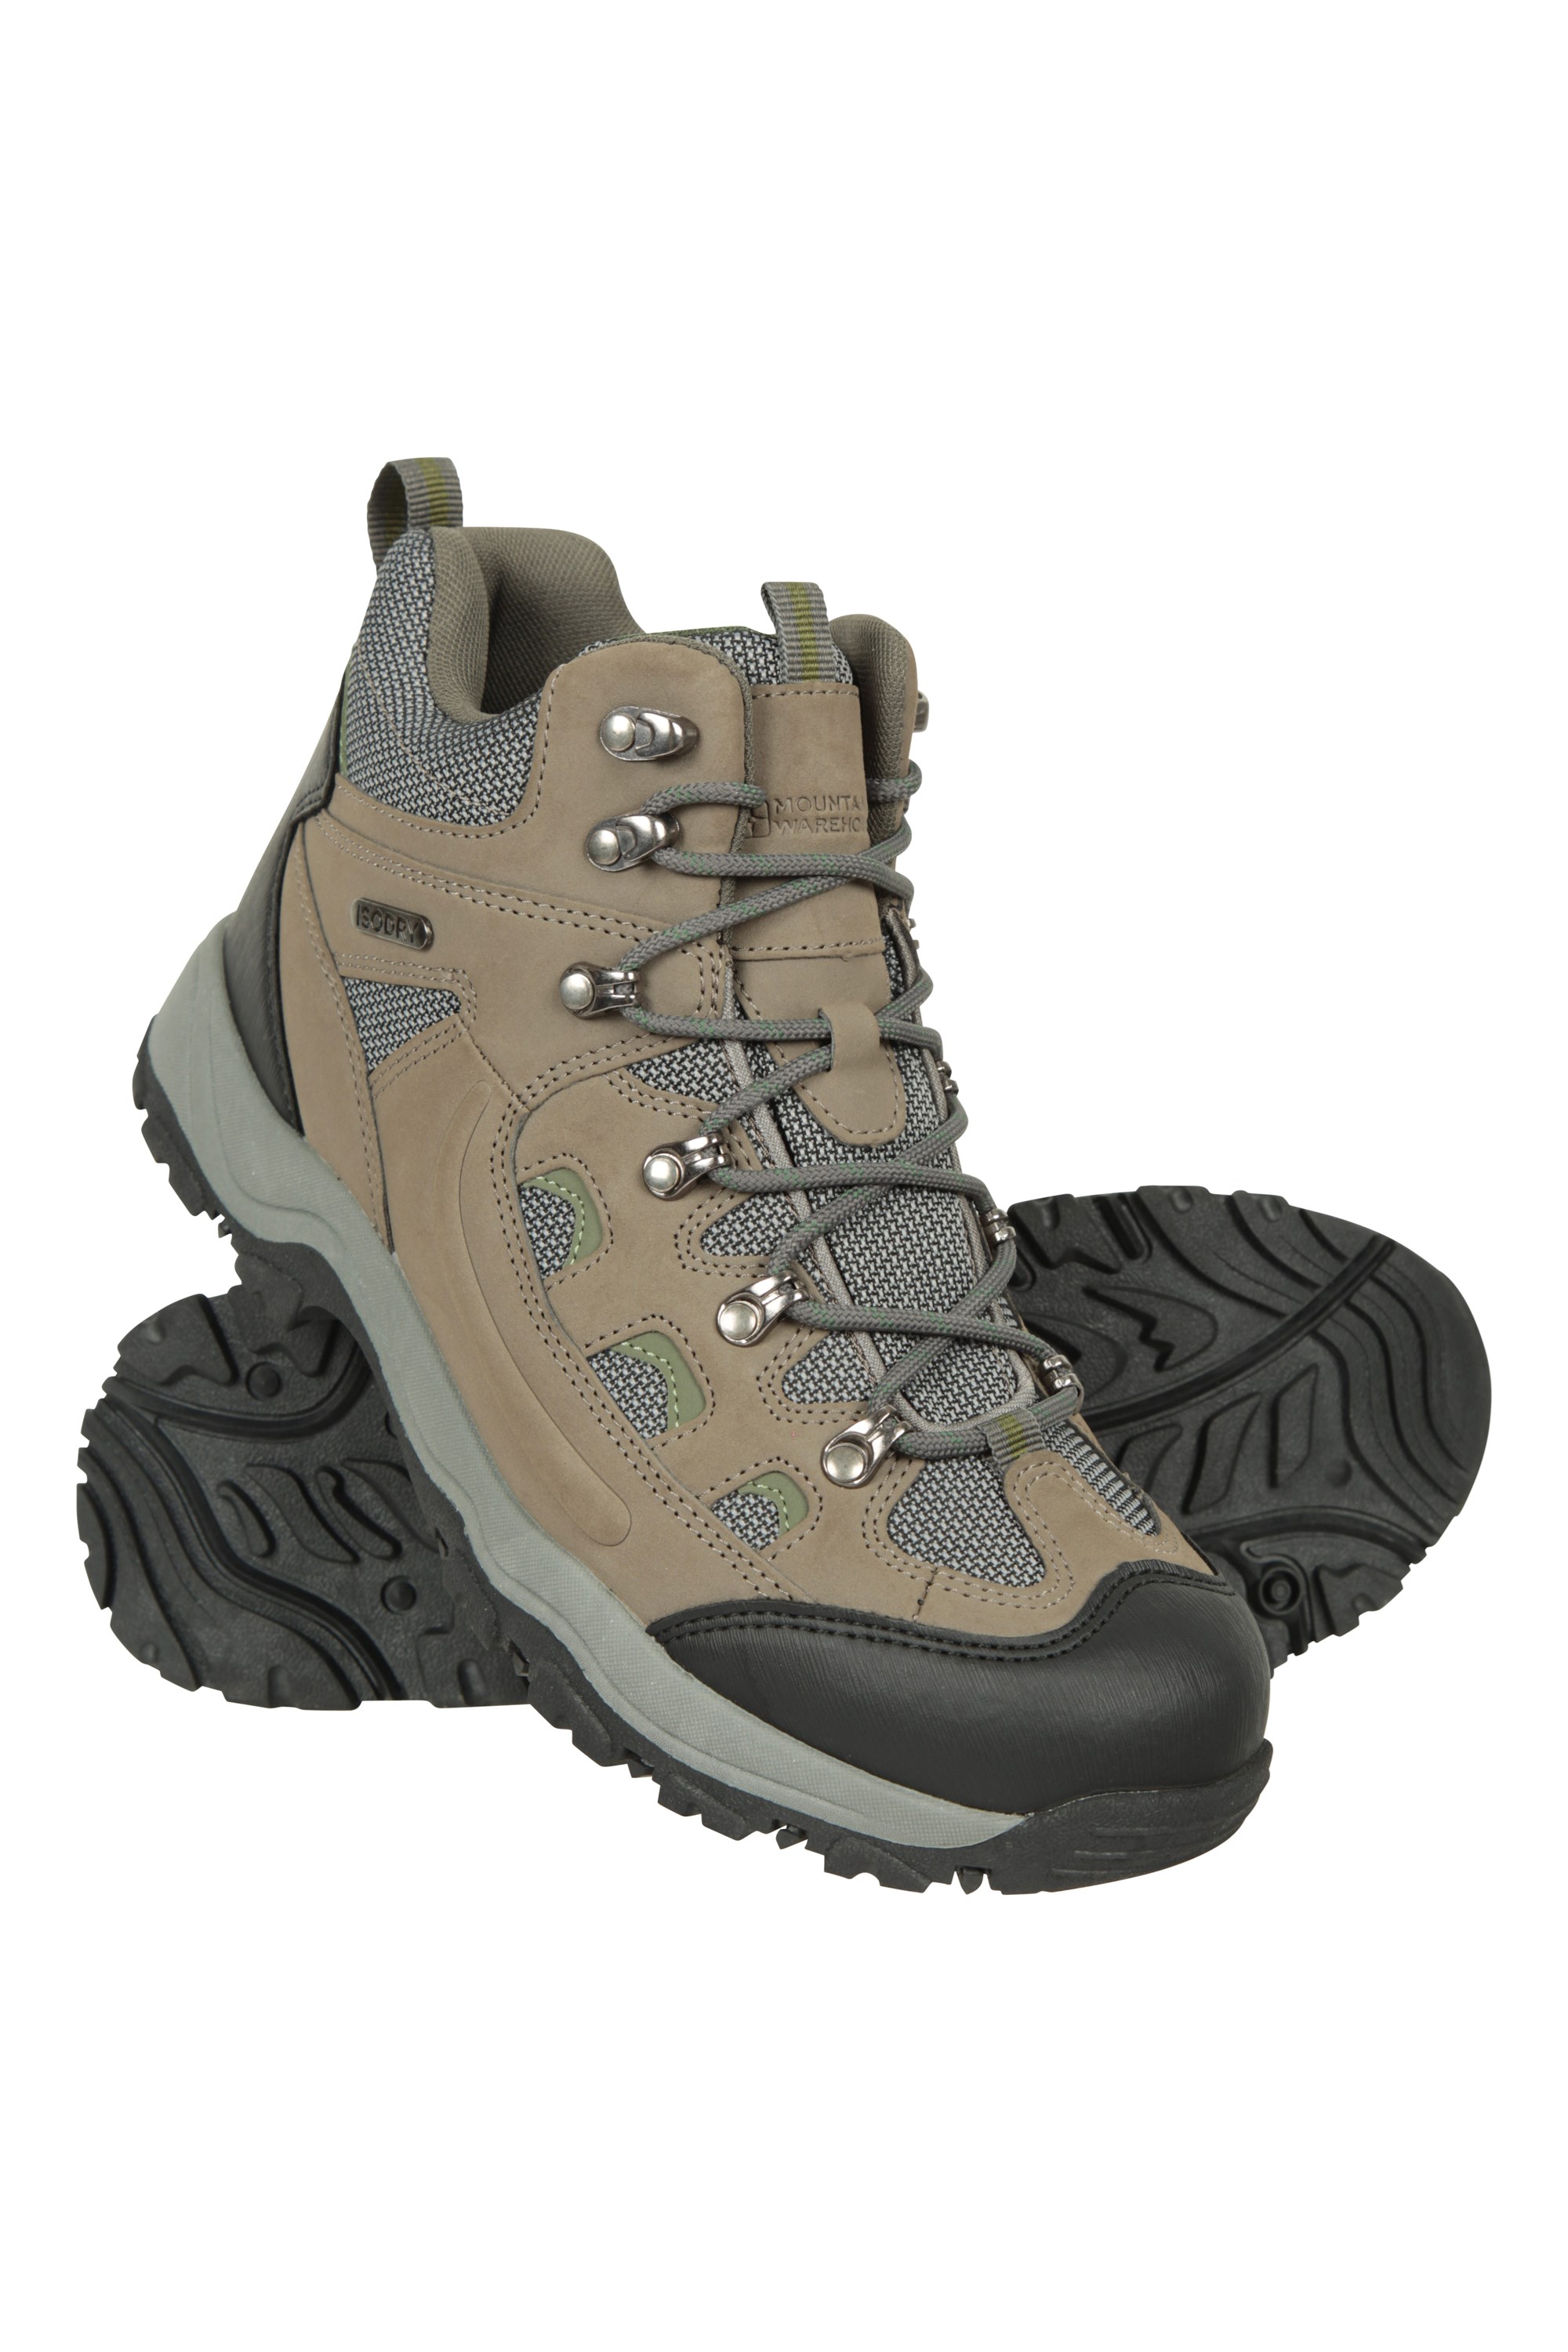 Mens Mountain Warehouse Adventurer Waterproof Boots - Mens - Green